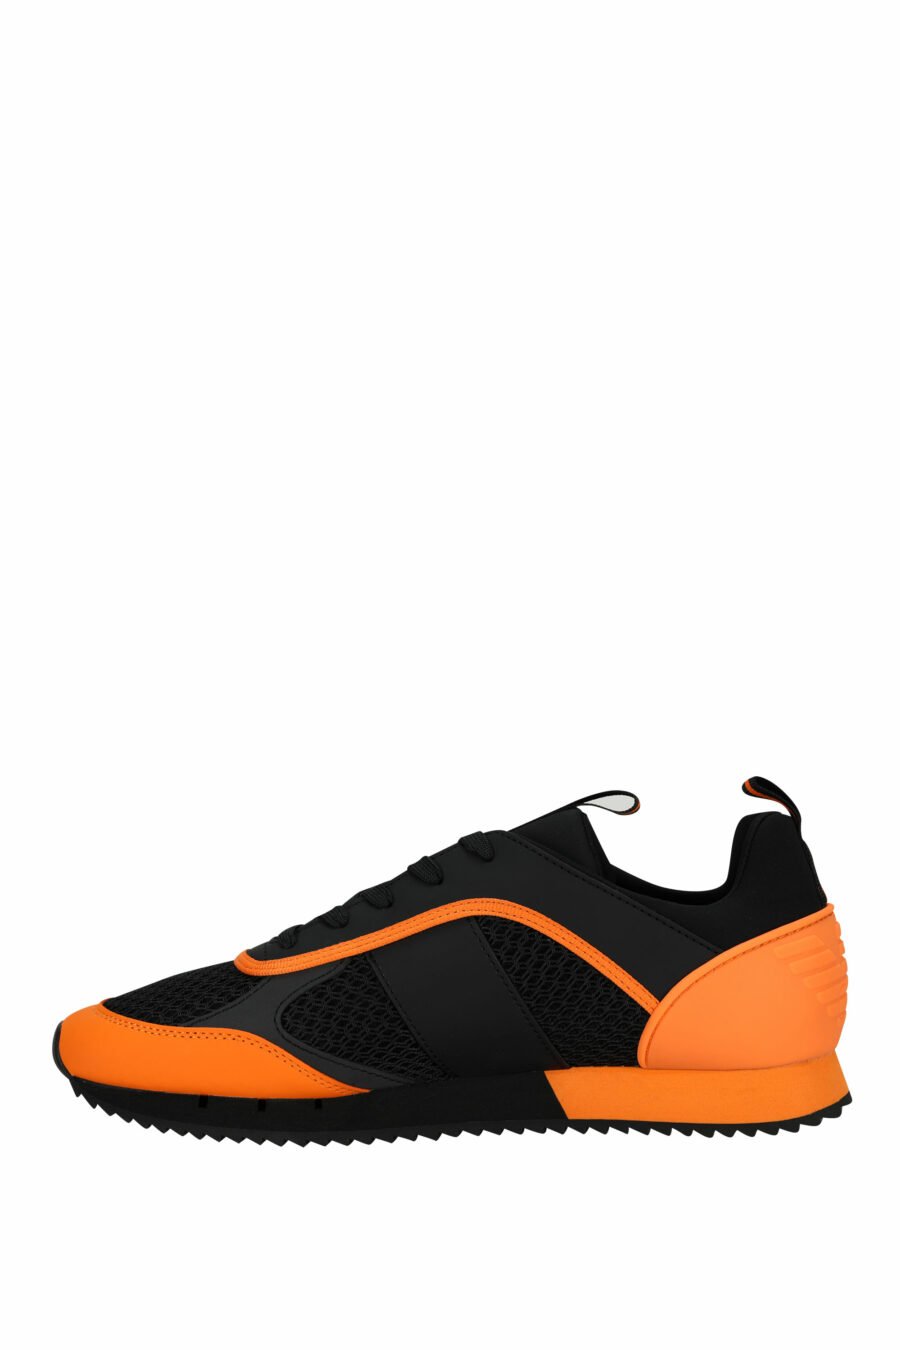 Baskets noires avec logo orange "lux identity" - 8057970798149 2